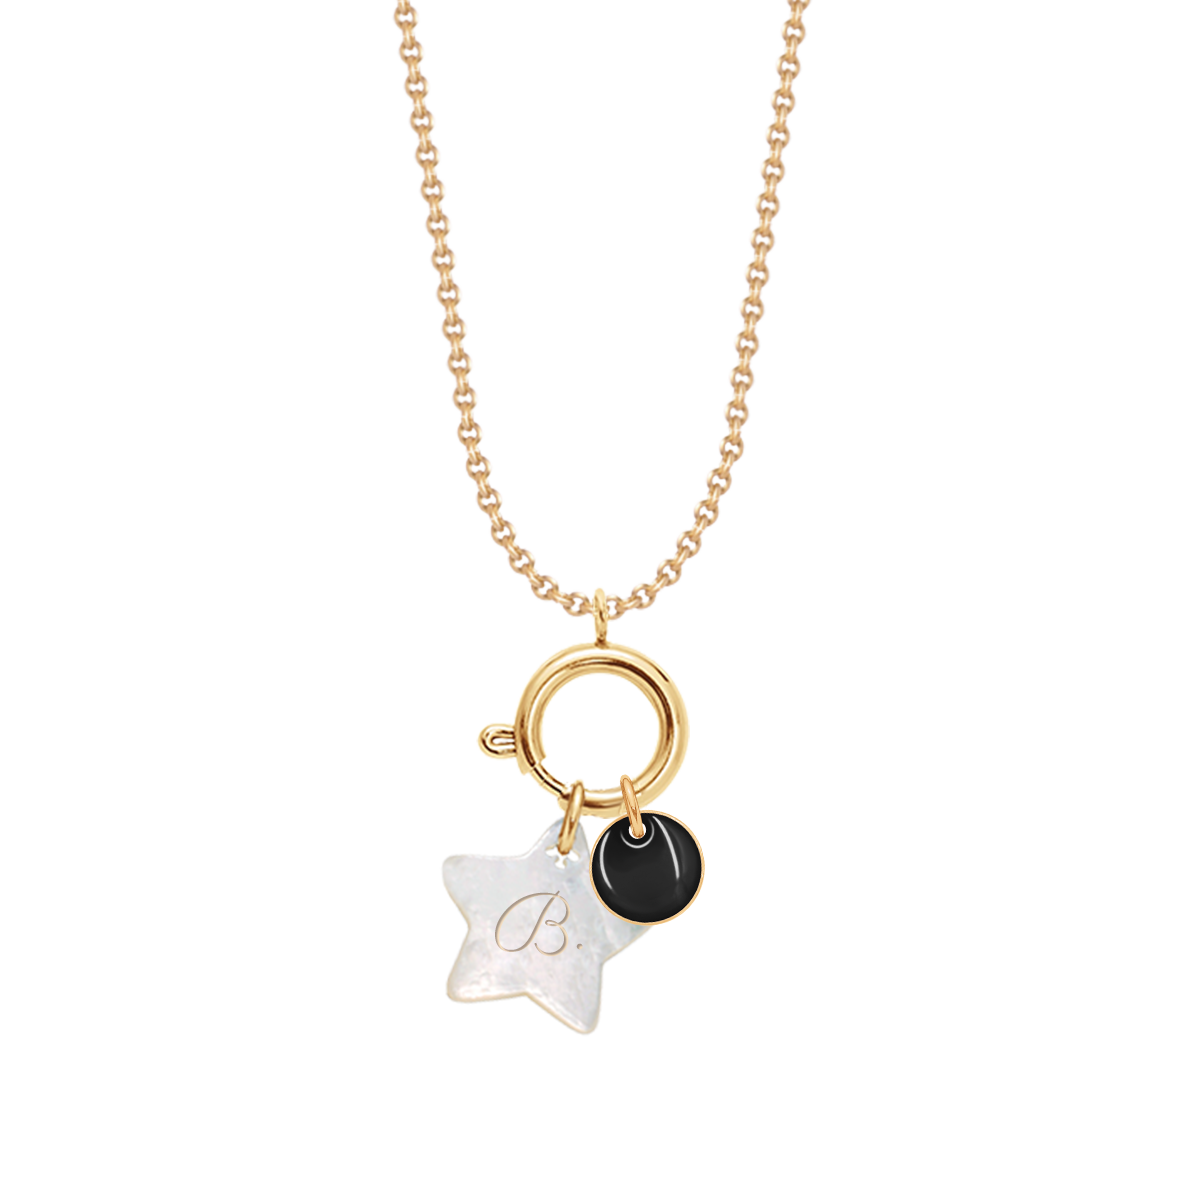 Halskette mit schwarzfarbenem 1 cm Medaillon und 1,5 cm Stern aus Perlmutt vergoldet